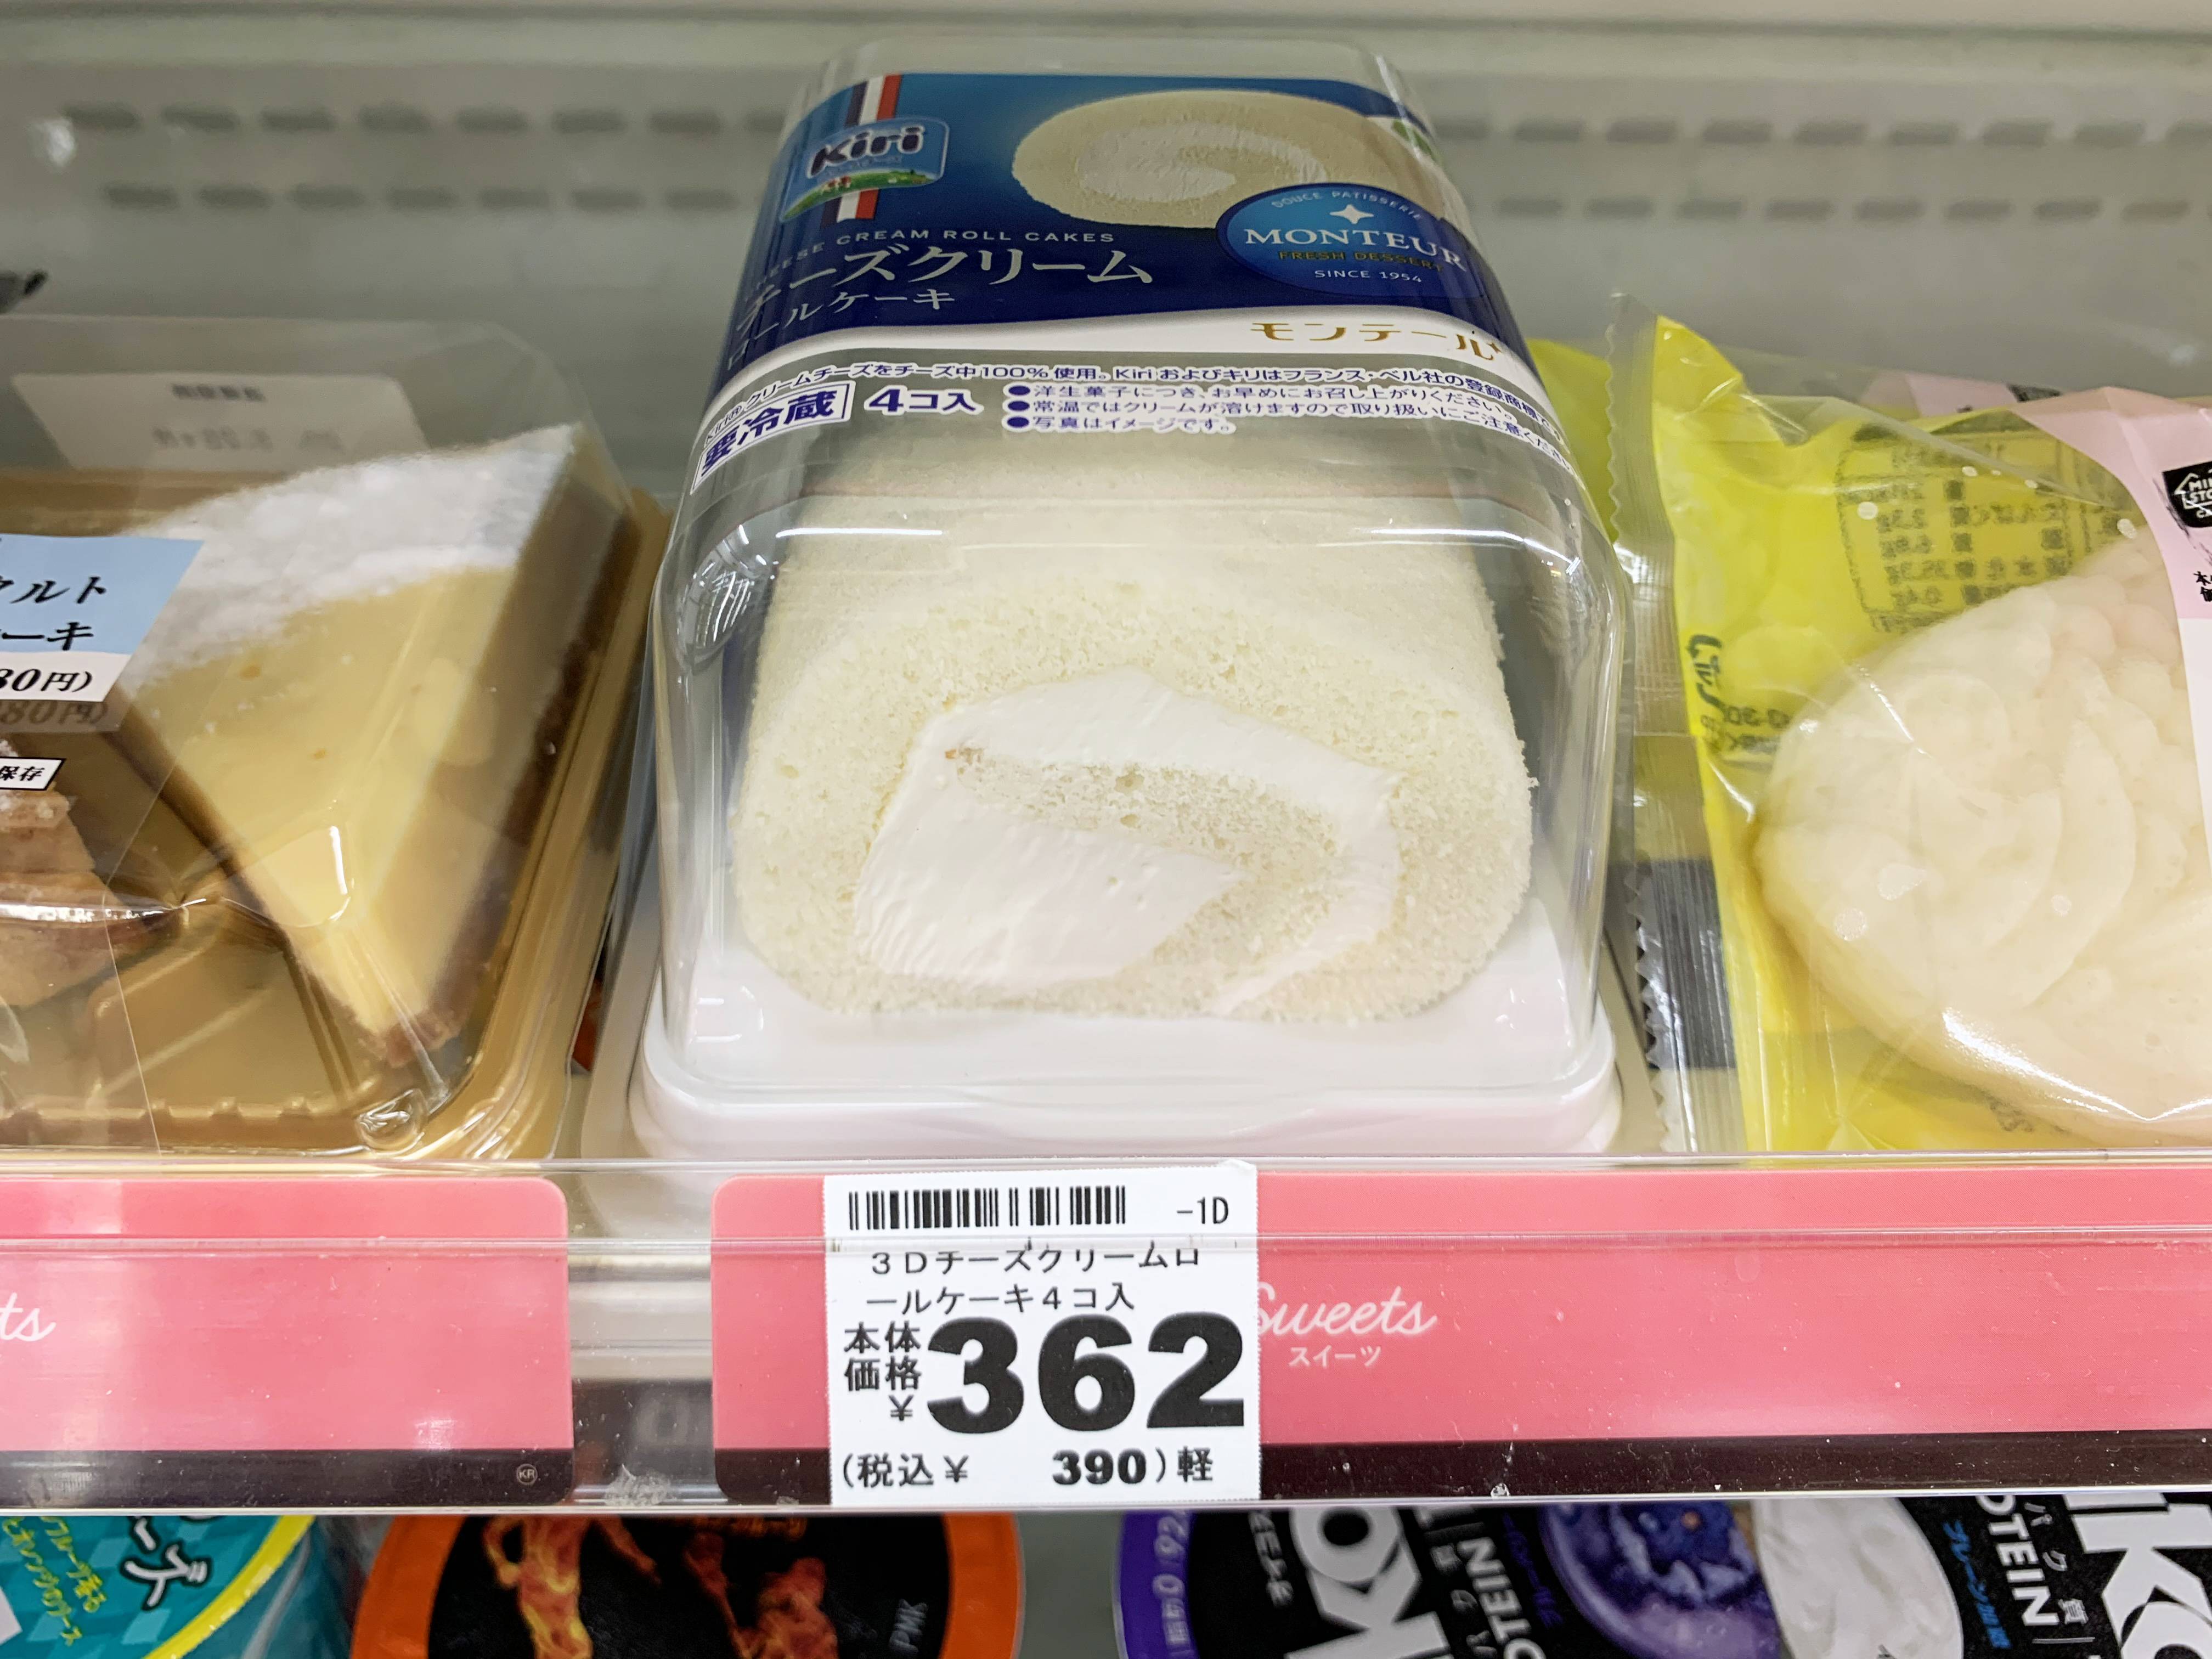 雪よりも白いkiri チーズクリームロールケーキ の恐ろしい本性について ロケットニュース24